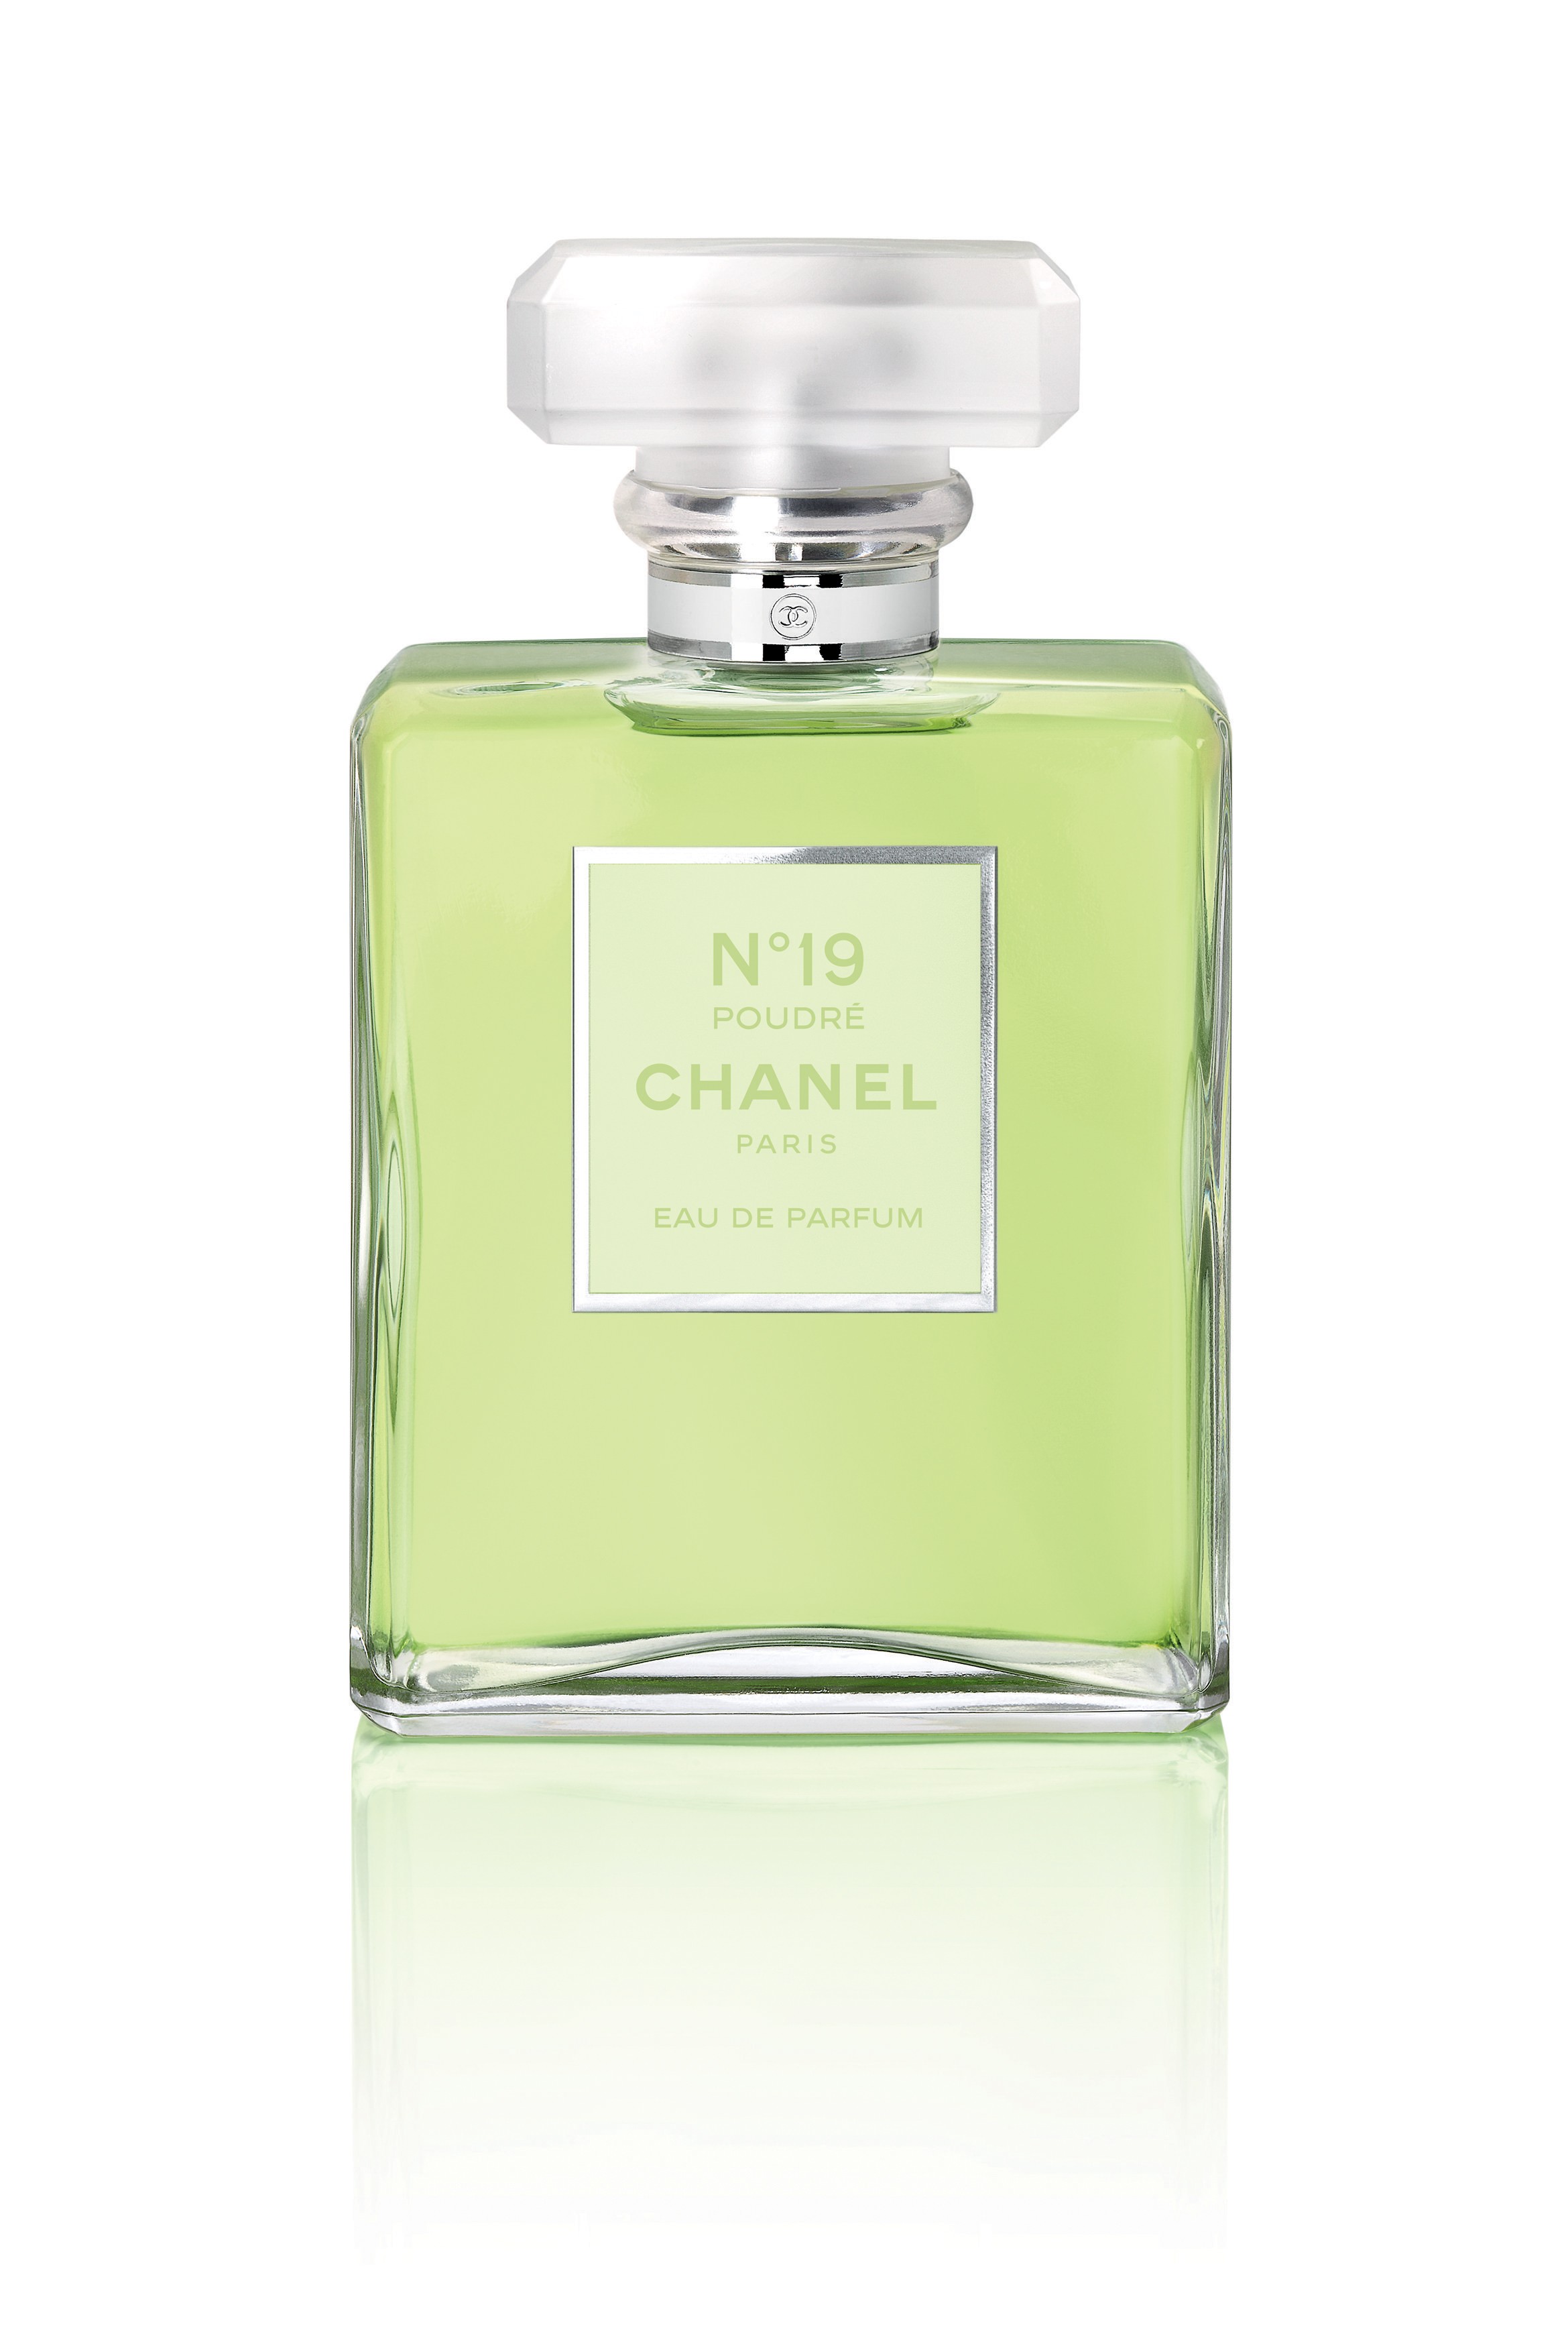 Scopri Donna di Chanel N° 19 - Poudré Eau de Parfum su MyBeauty